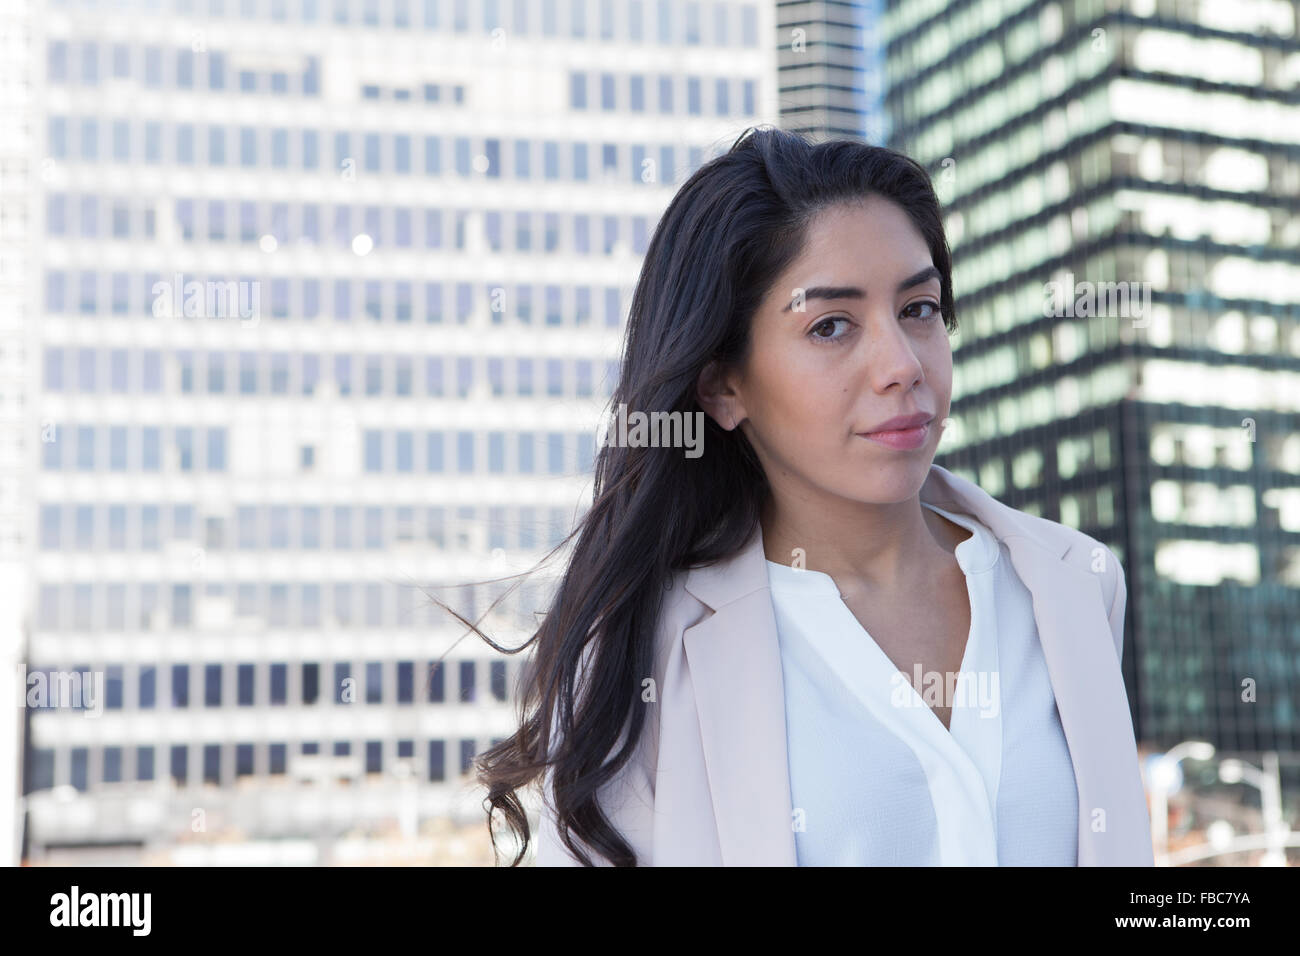 Les jeunes professionnels d'Amérique latine. womay Photographié dans la ville de New York en novembre 2015 Banque D'Images